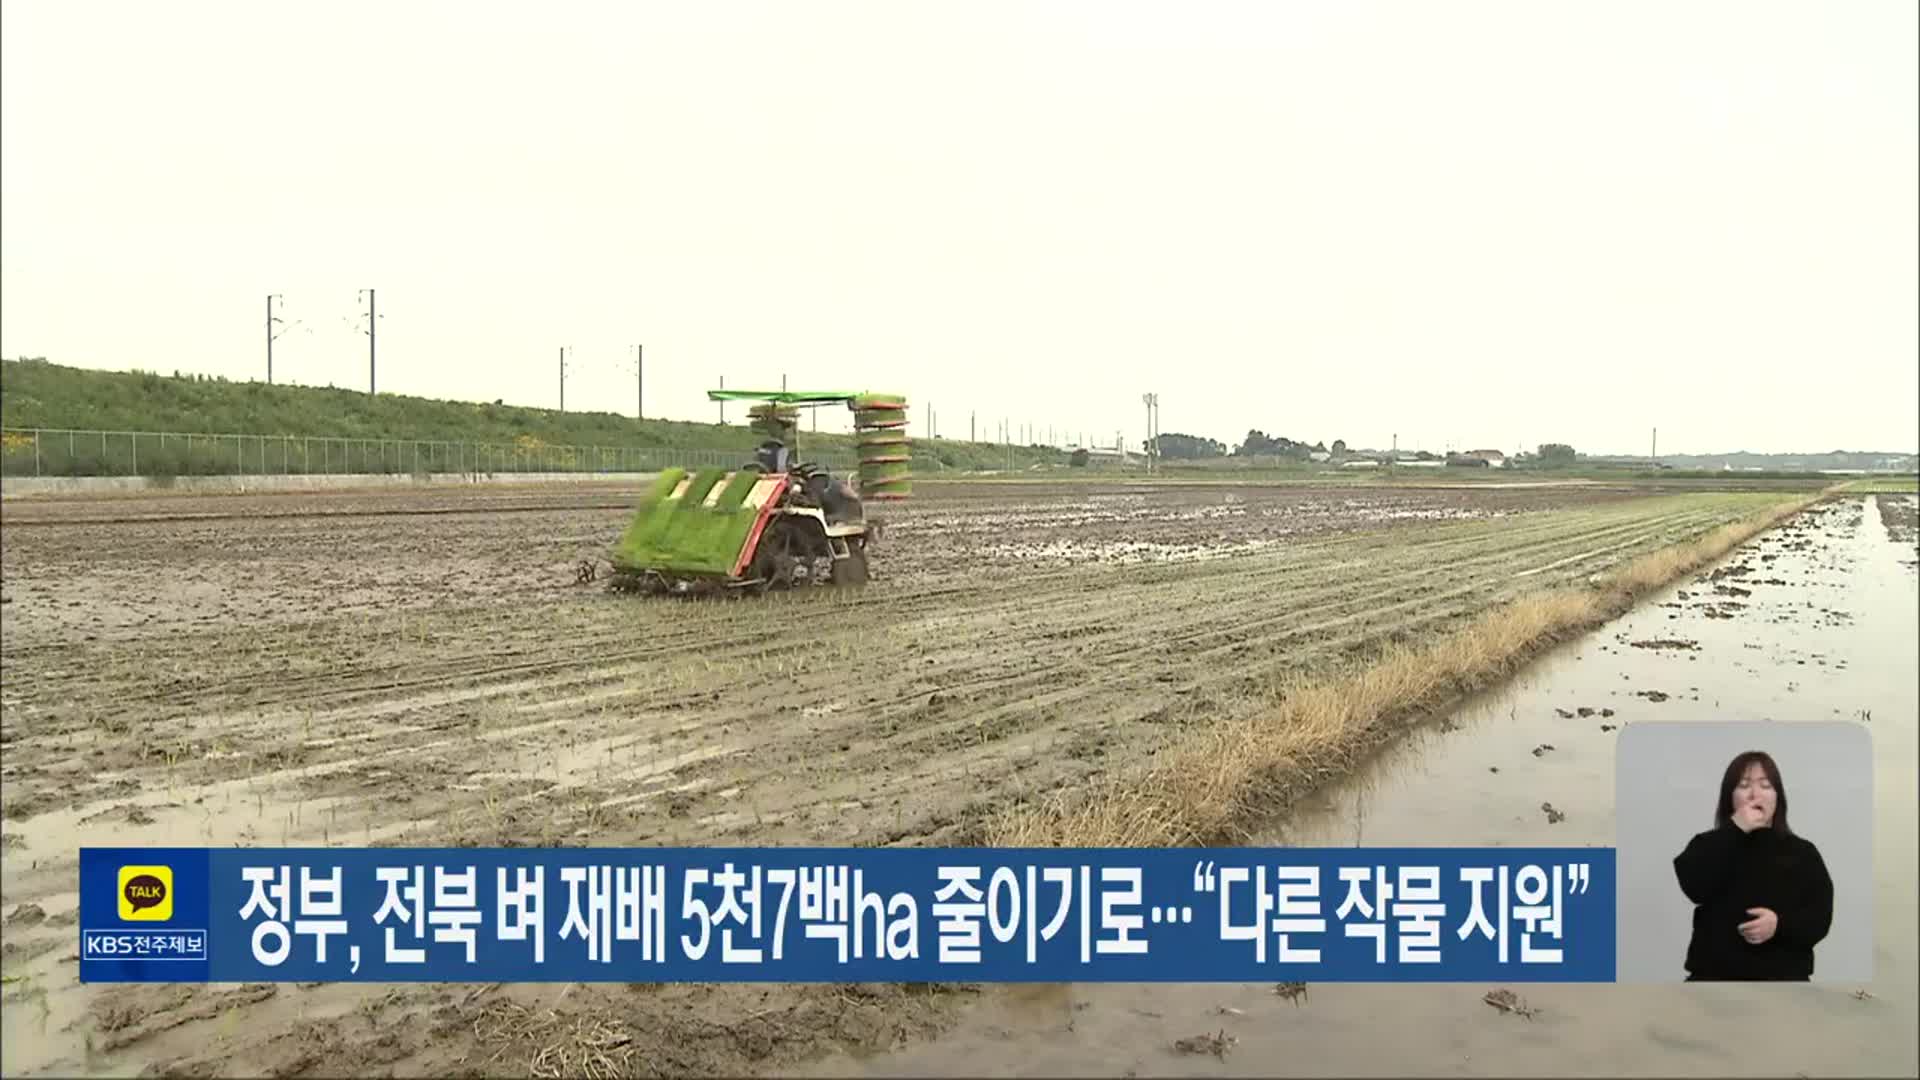 정부, 전북 벼 재배 5천7백ha 줄이기로…“다른 작물 지원”